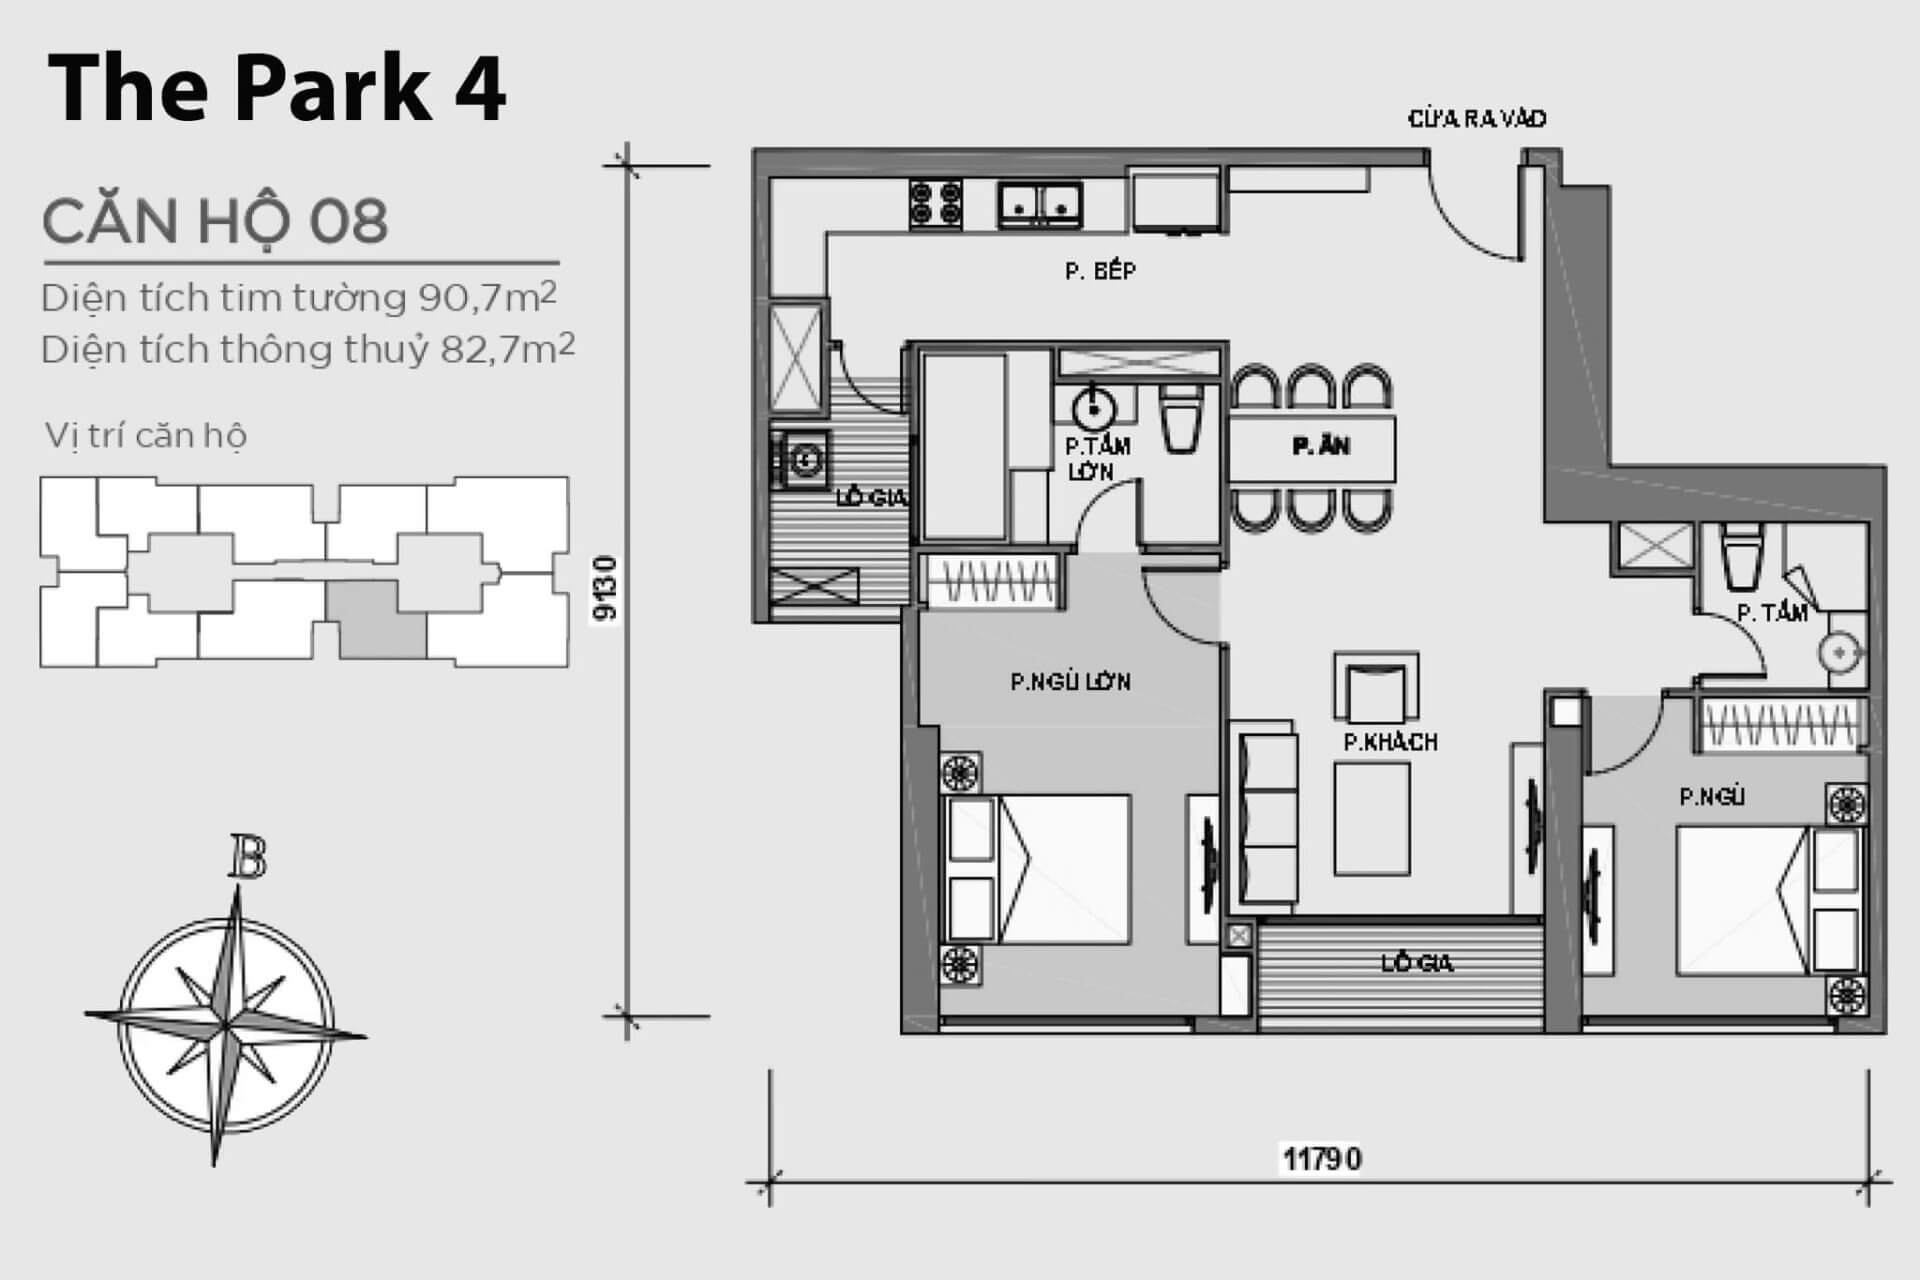 mặt bằng layout căn hộ số 08 Park 4 Vinhomes Central Park